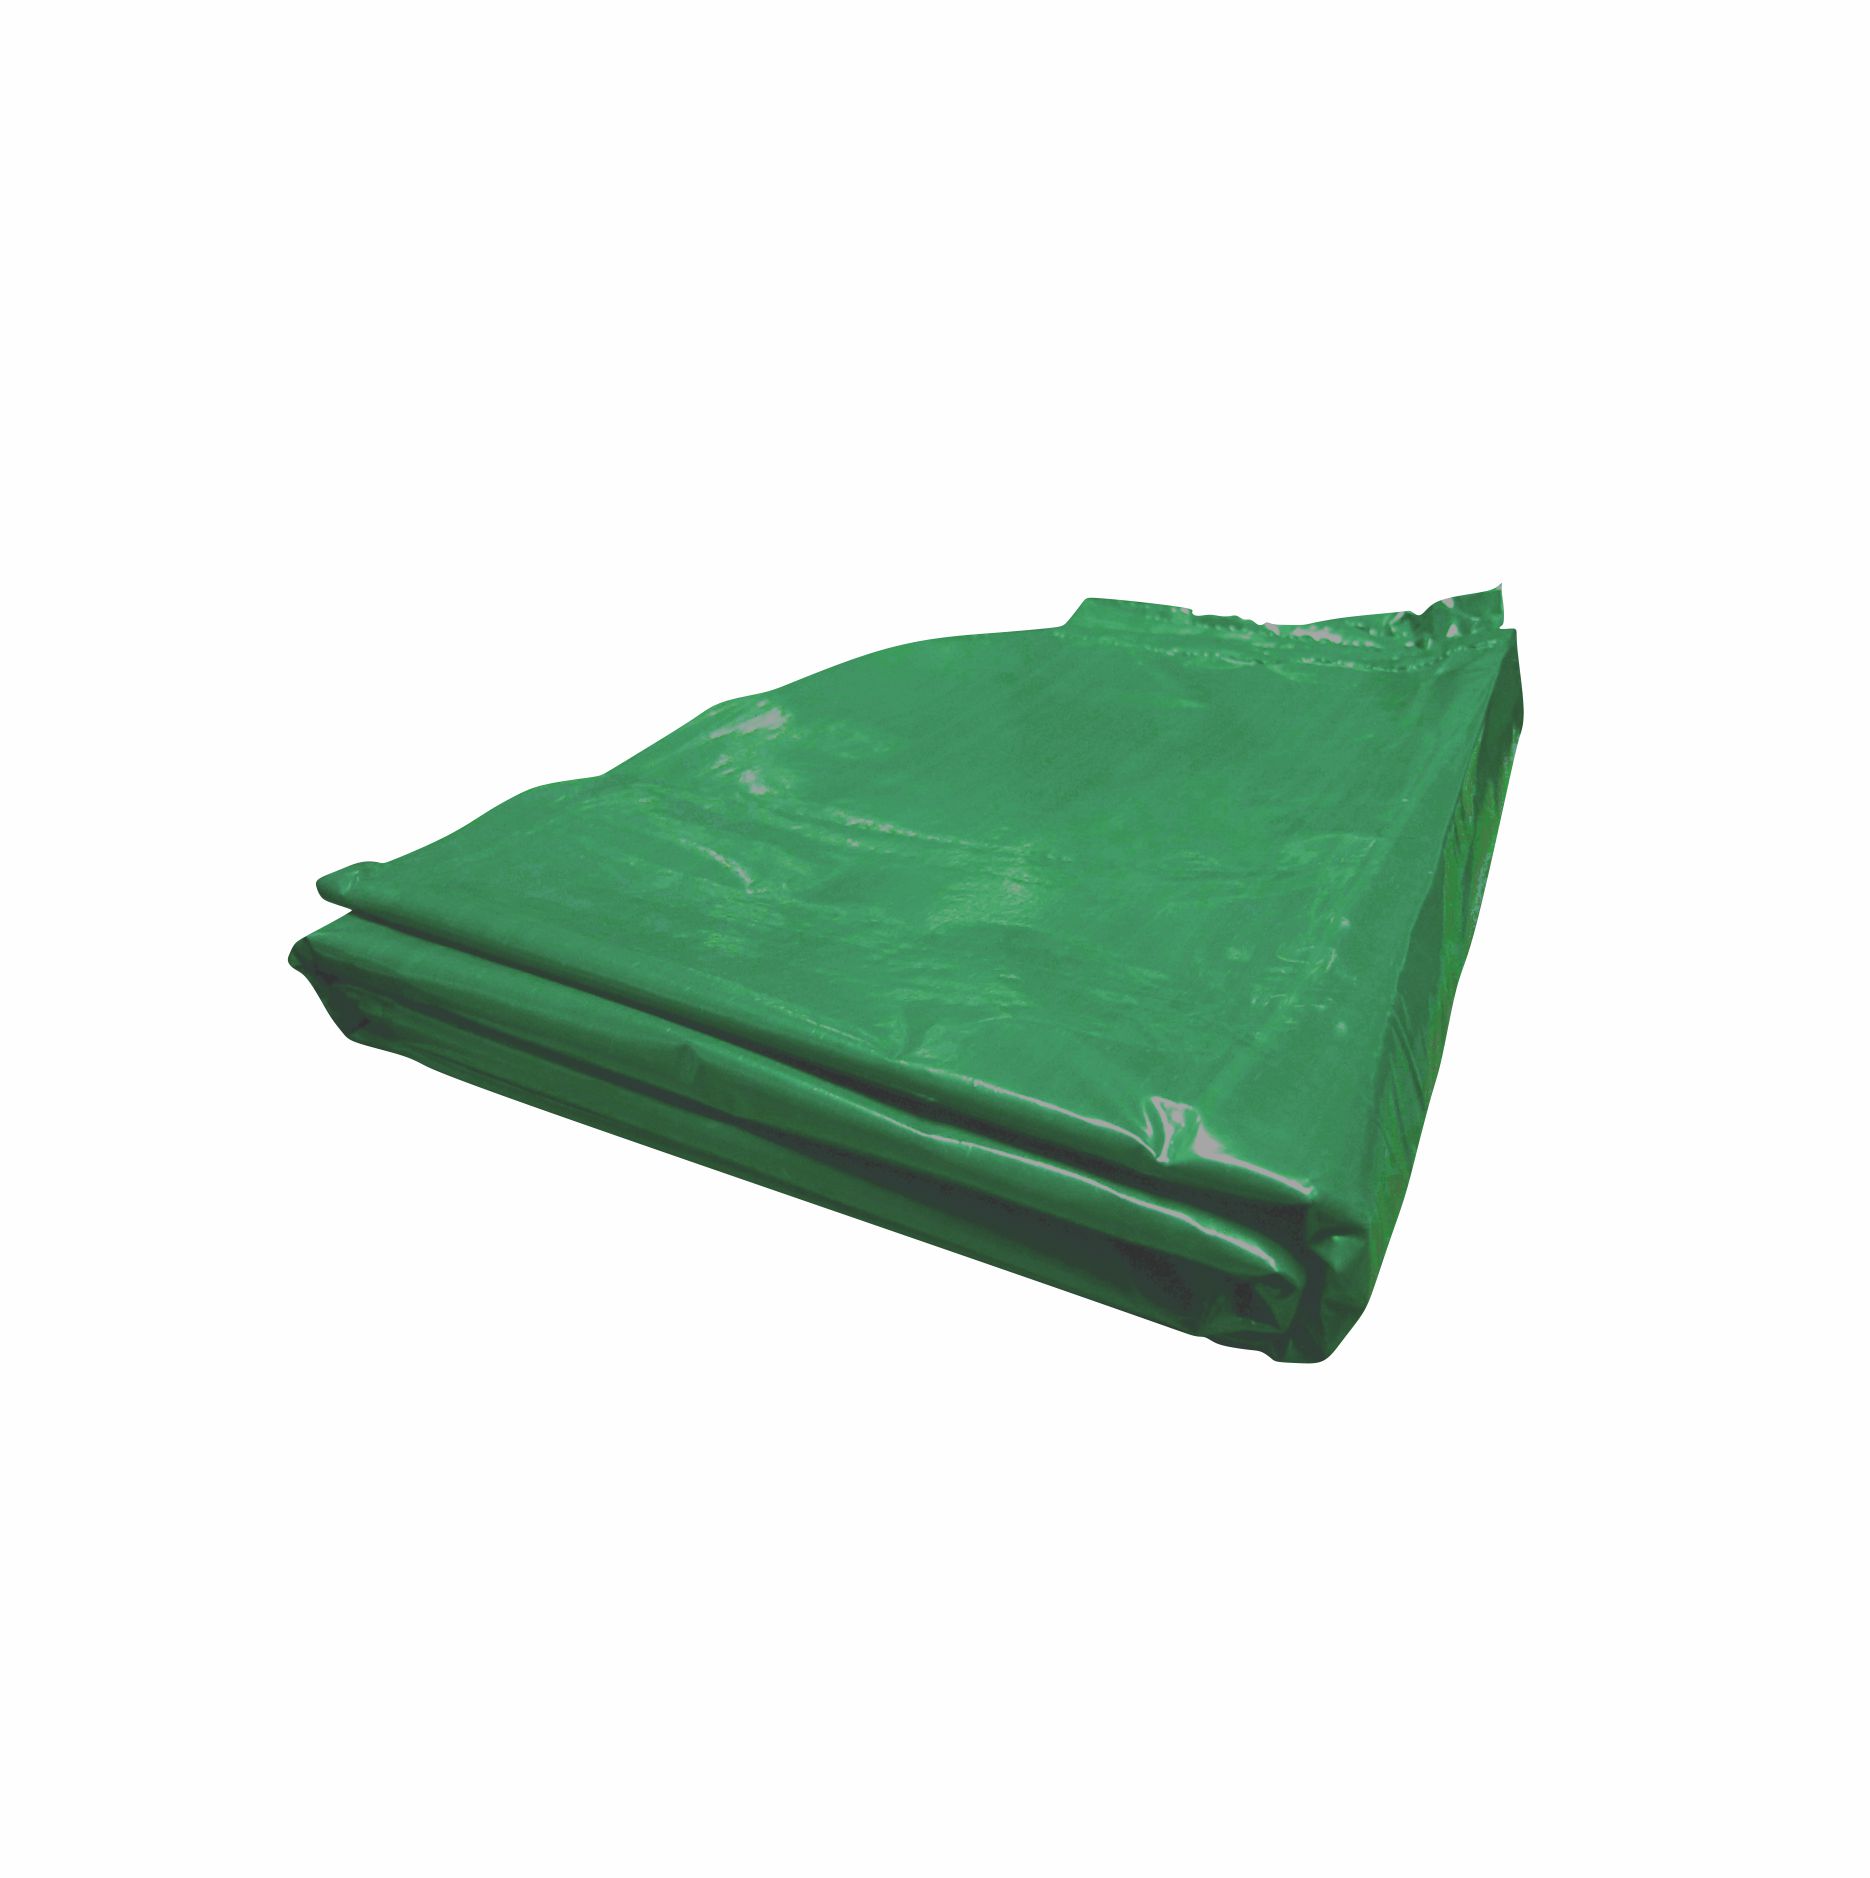 Pieza de bolsa 1.10 x 1.20 de color verde